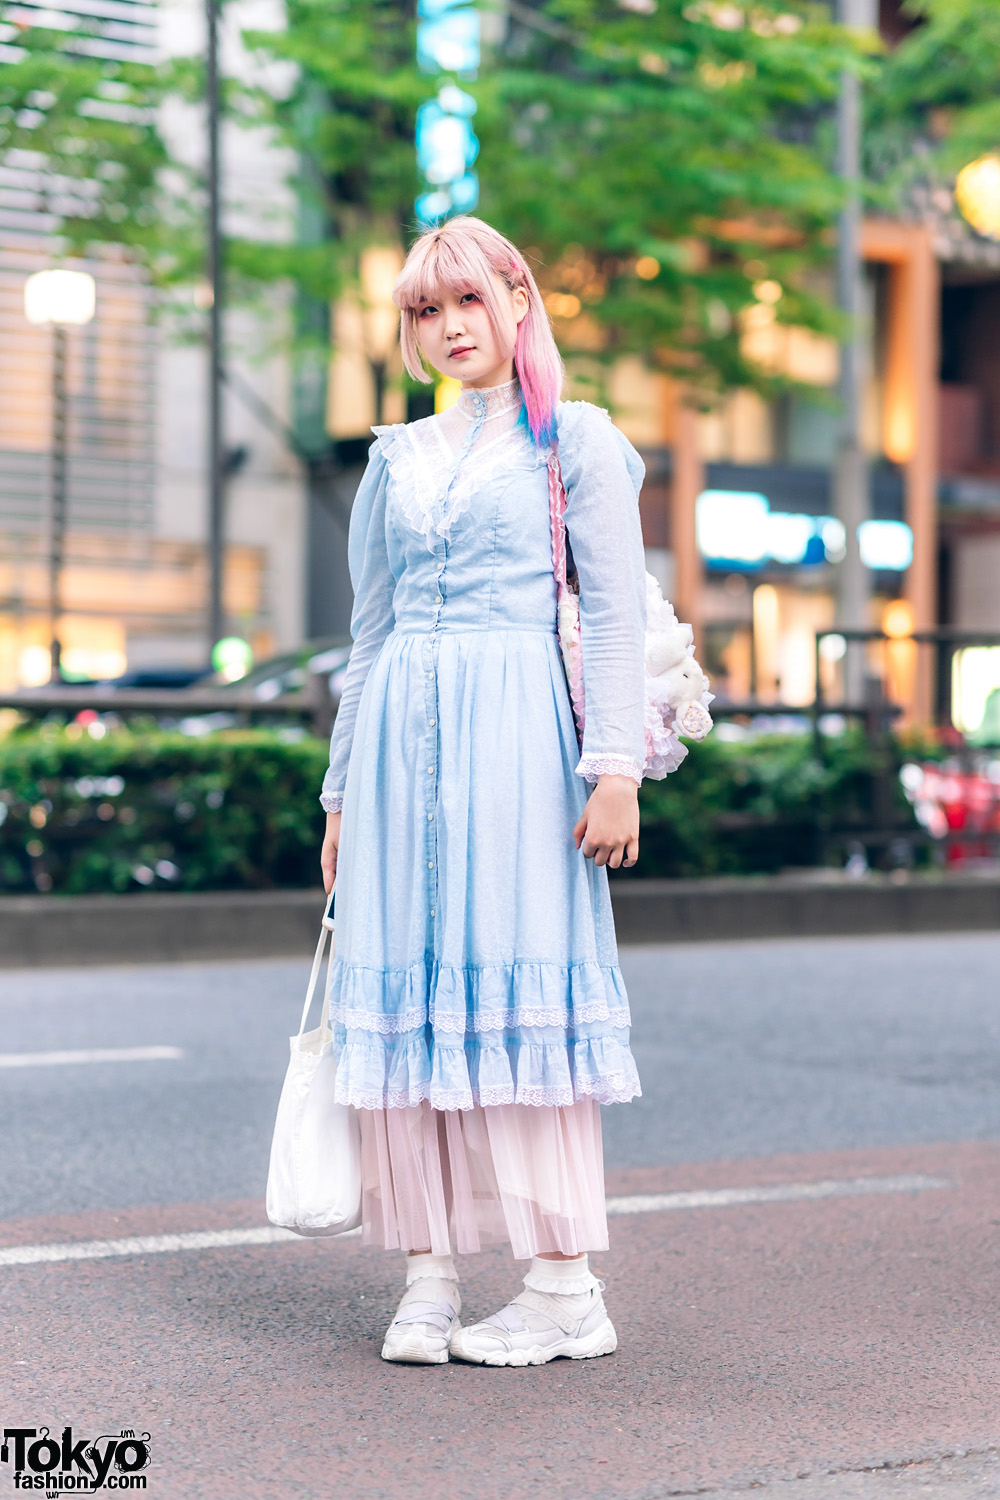 Harajuku Vintage Pastel Fashion w/ Pink Hair, Gunne Sax Ruffle Dress, Sheer Maxi Skirt, Gunifuni Sheepskin, &  Plushie Bag